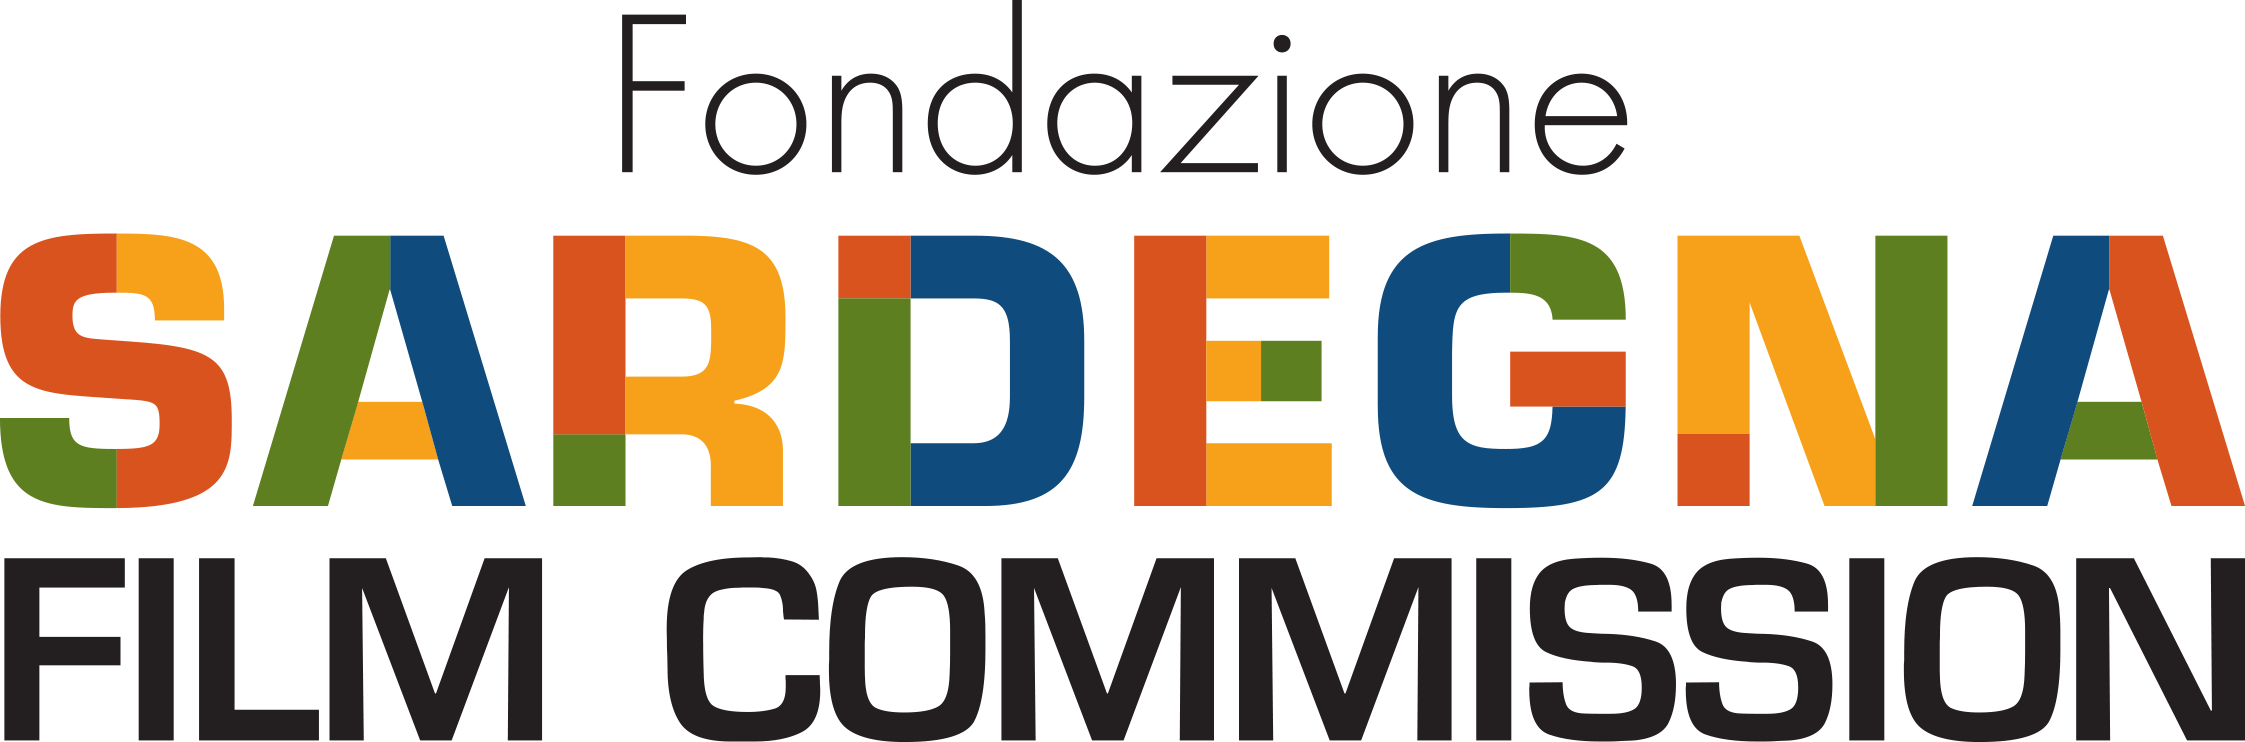 Fondazione Sardegna Film Commission logo